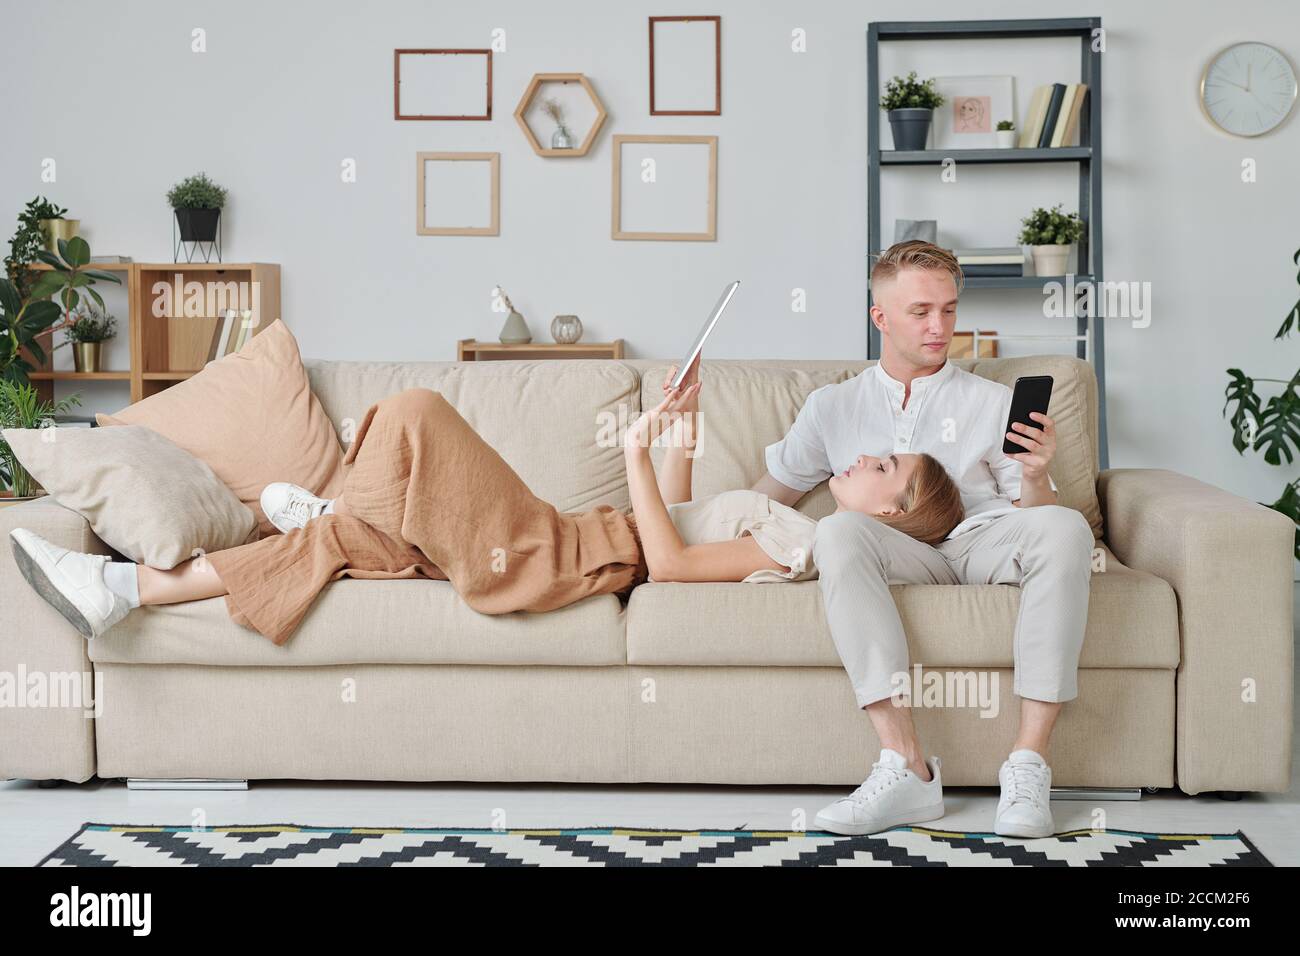 Junge Frau mit Touchpad hält ihren Kopf auf den Knien Ehemann mit Smartphone Stockfoto